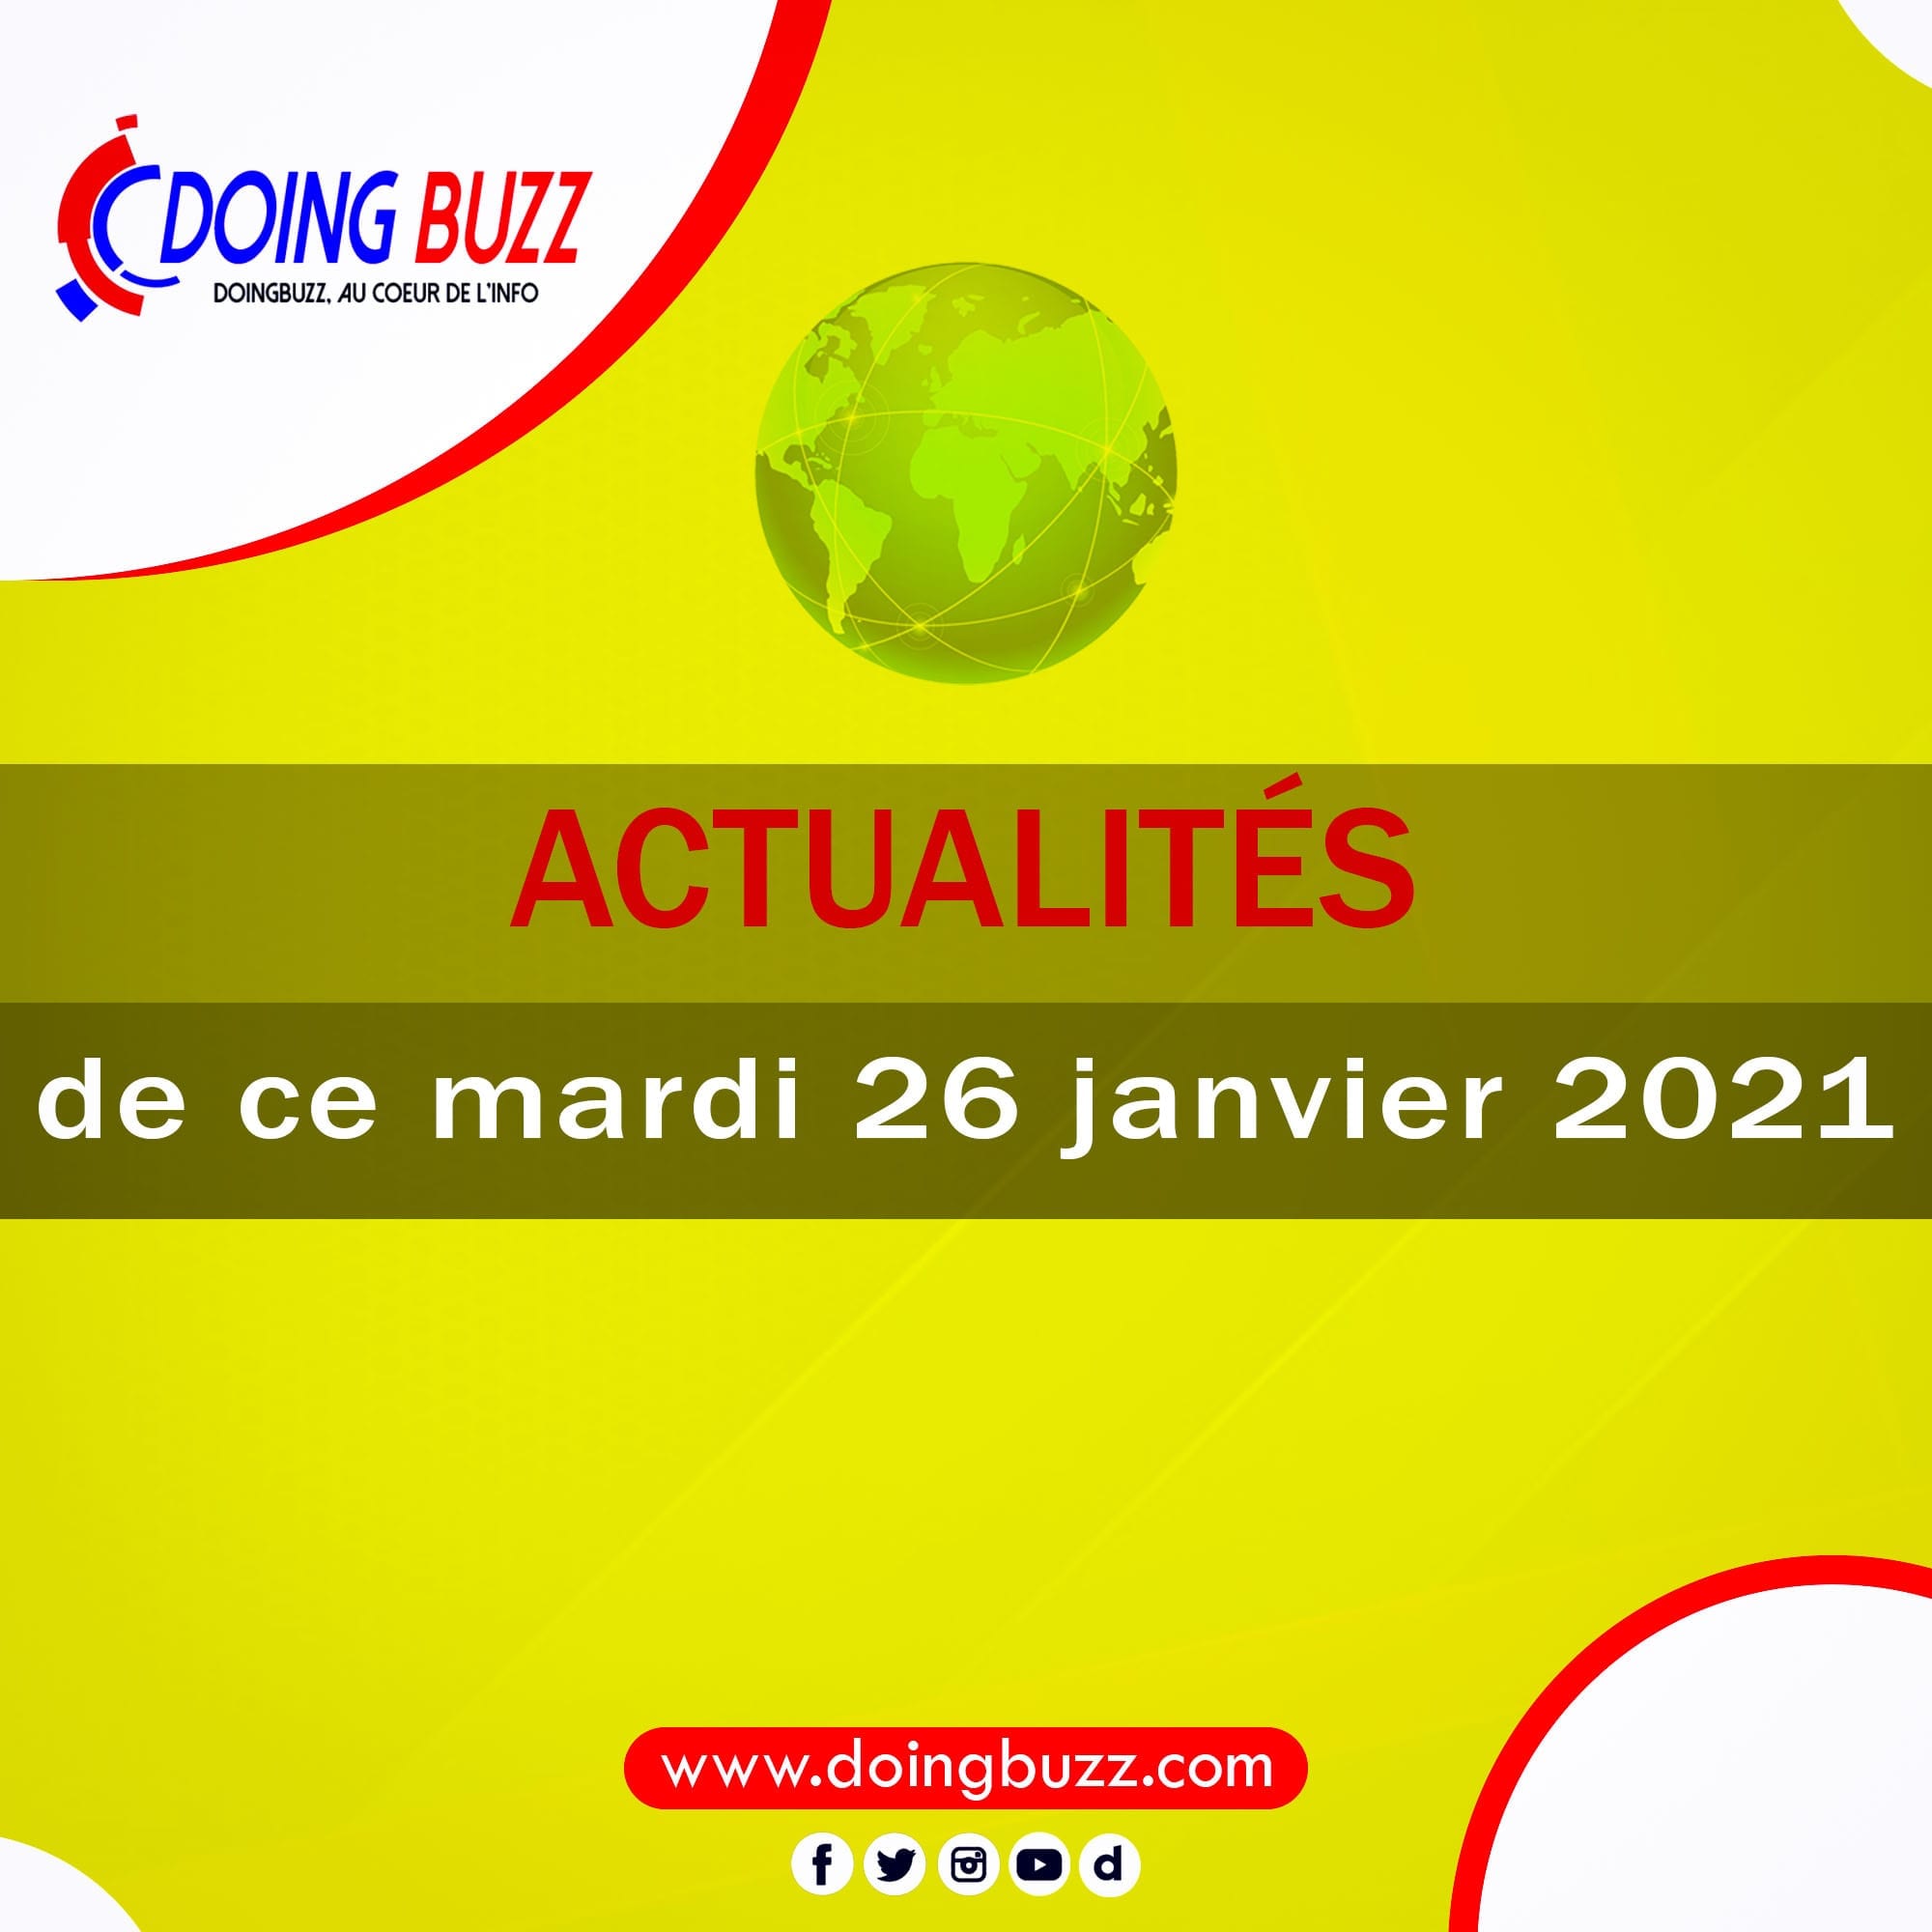 Actualités Du Jour Sur Doingbuzz: Mardi Le 26 Janvier 2021